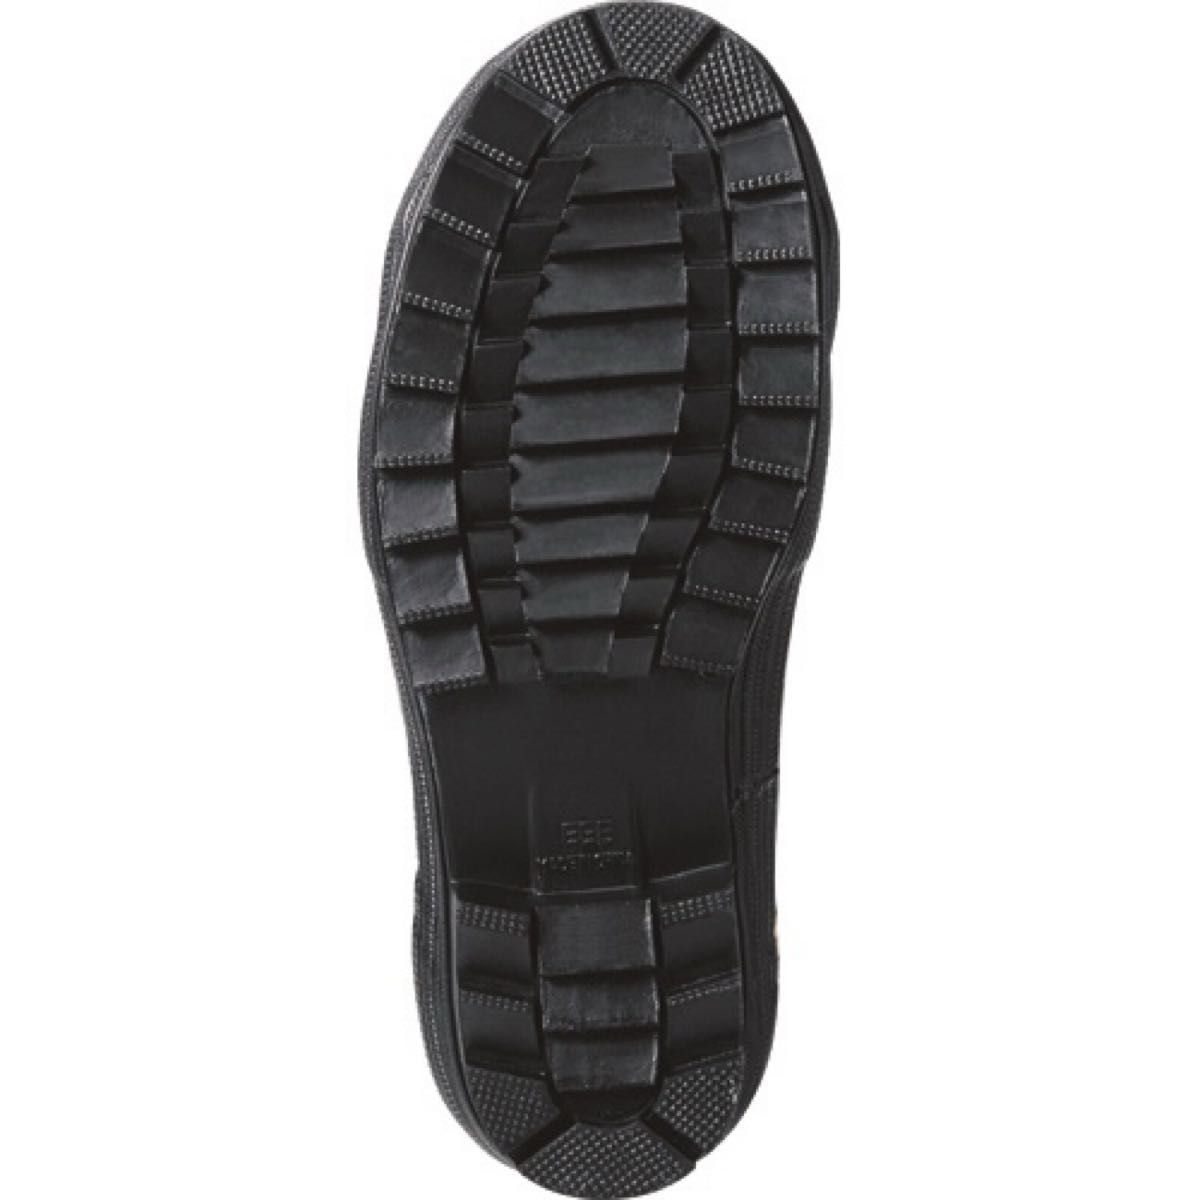 【新品未使用品】TULTEX 安全長靴　長靴　サイズ:25.5cm 色:ネイビー×イエロー　